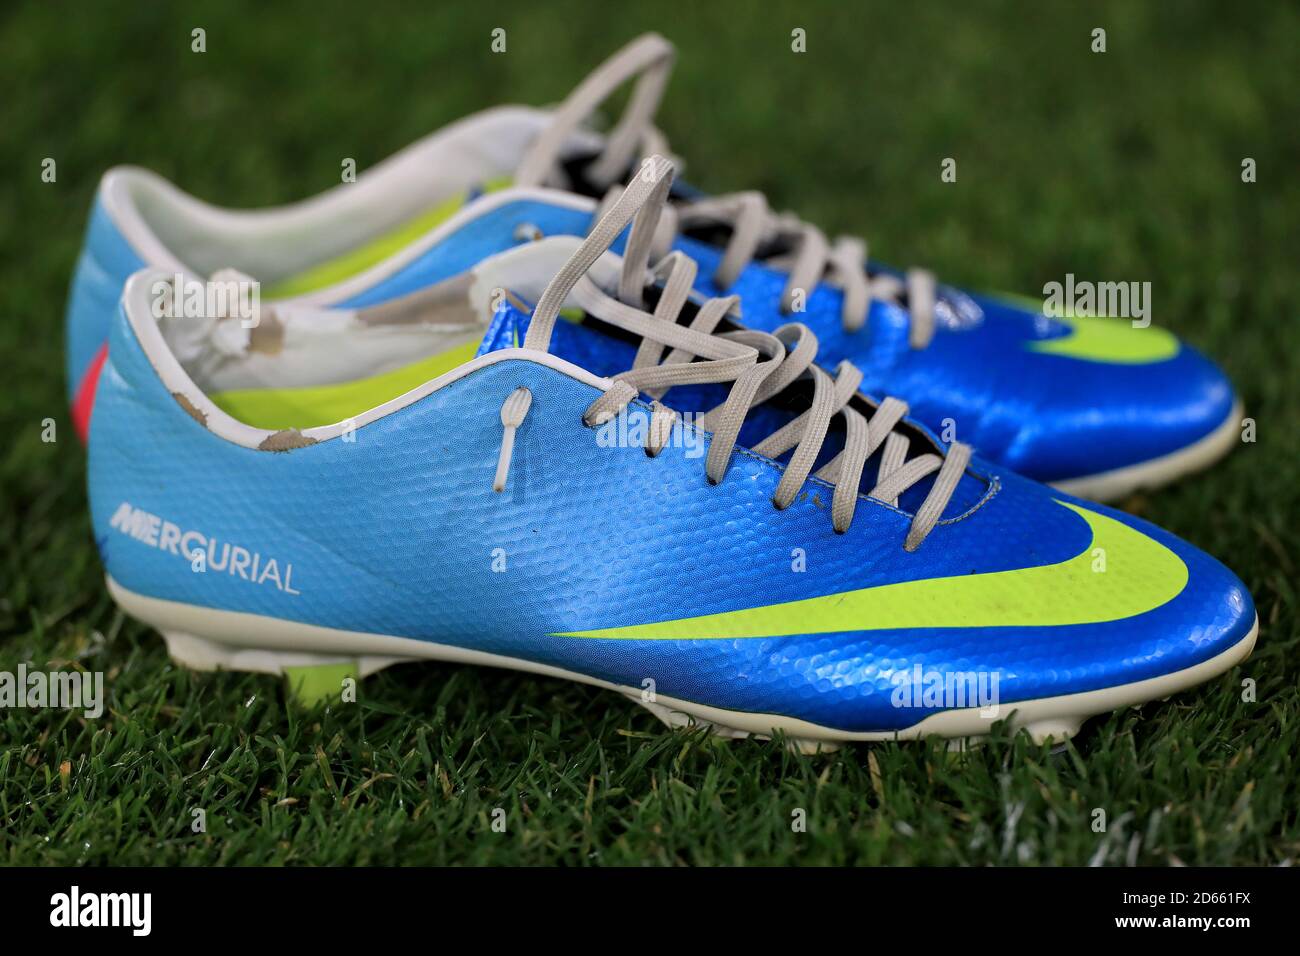 Una vista di alcune scarpe da calcio Nike Mercirial Foto stock - Alamy